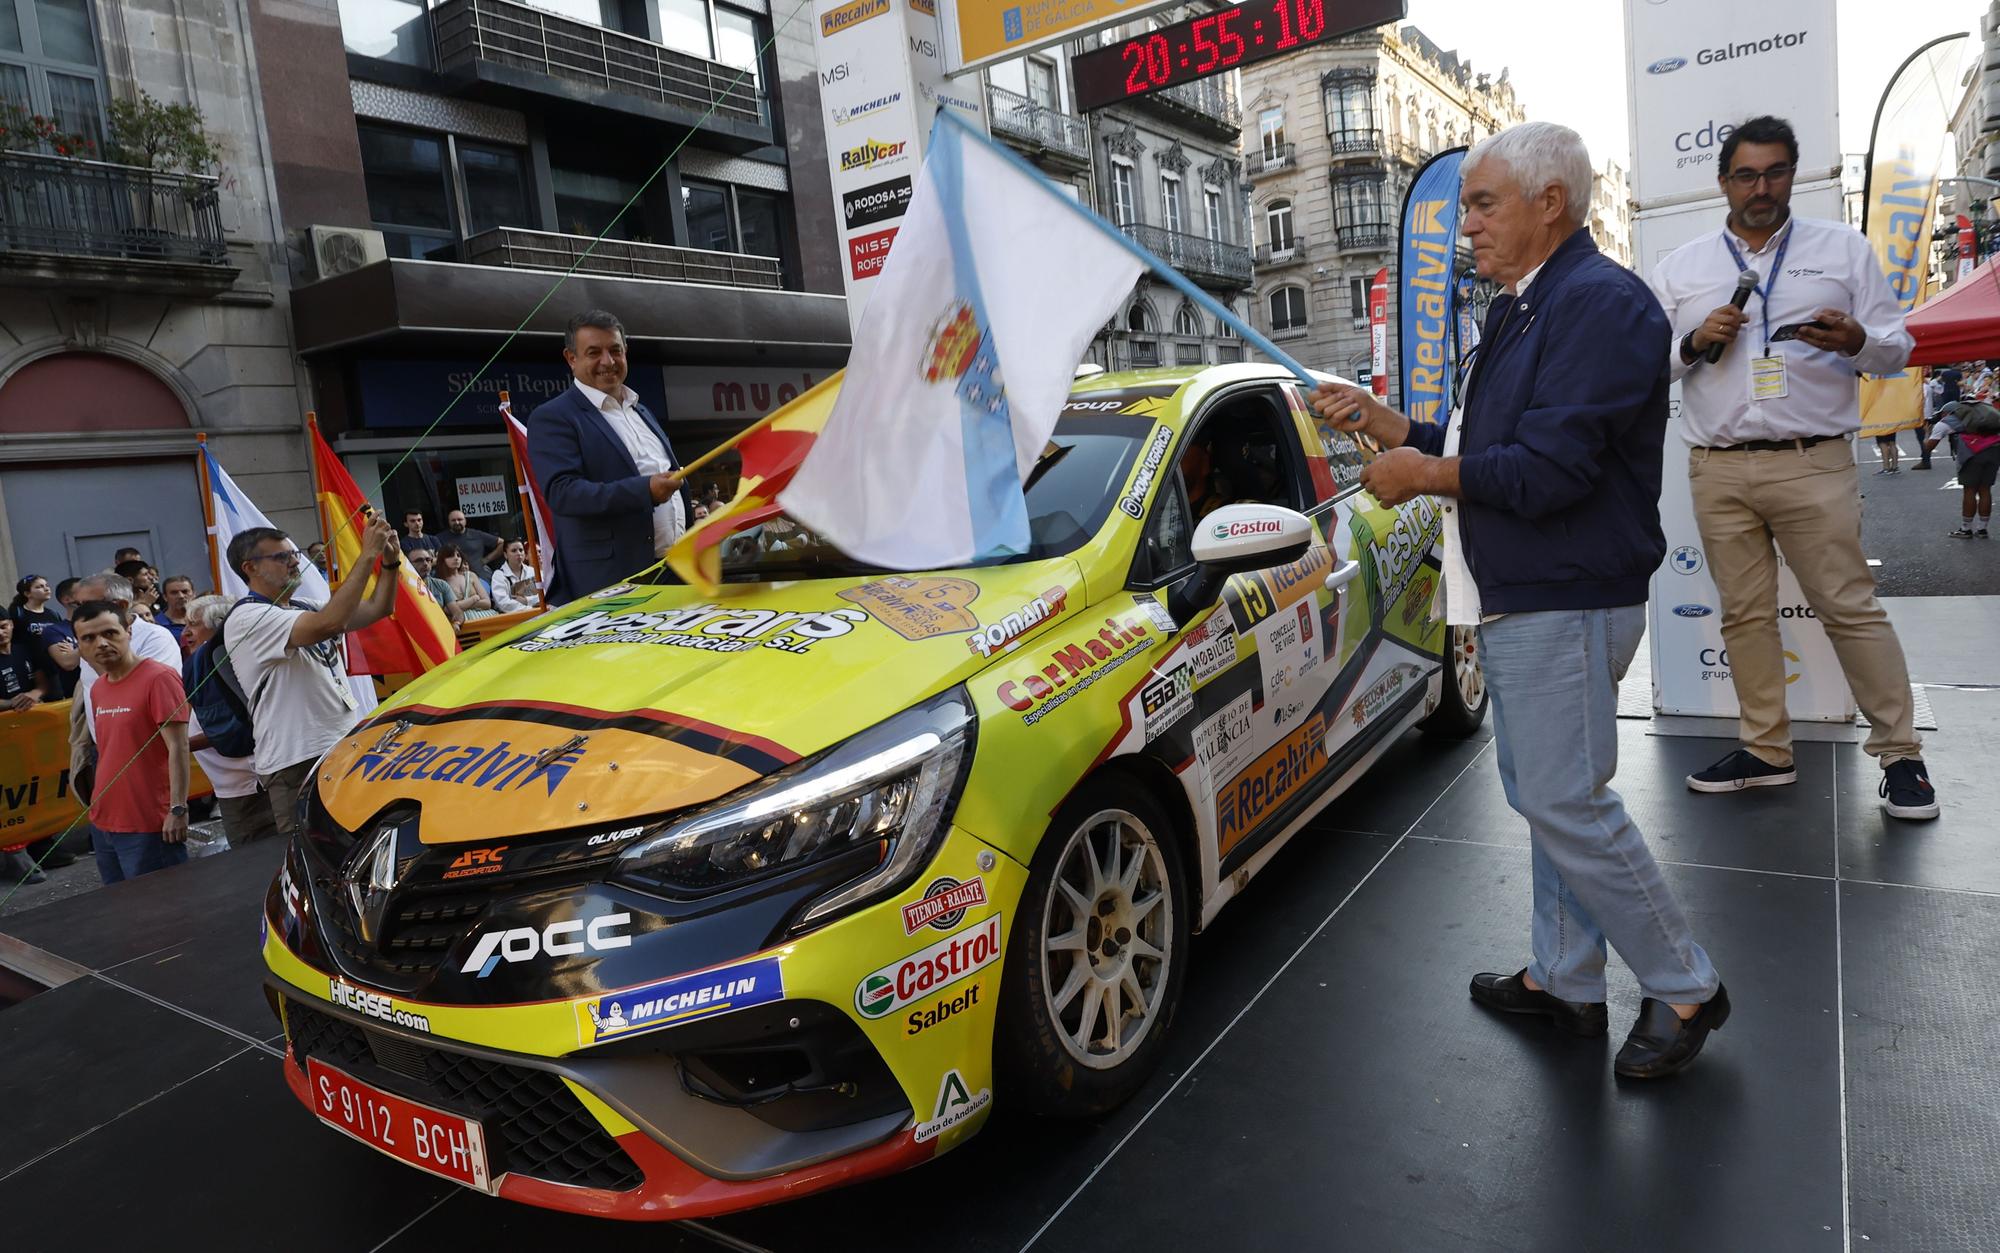 La fiebre del Rallye Recalvi Rías Baixas rompe los termómetros